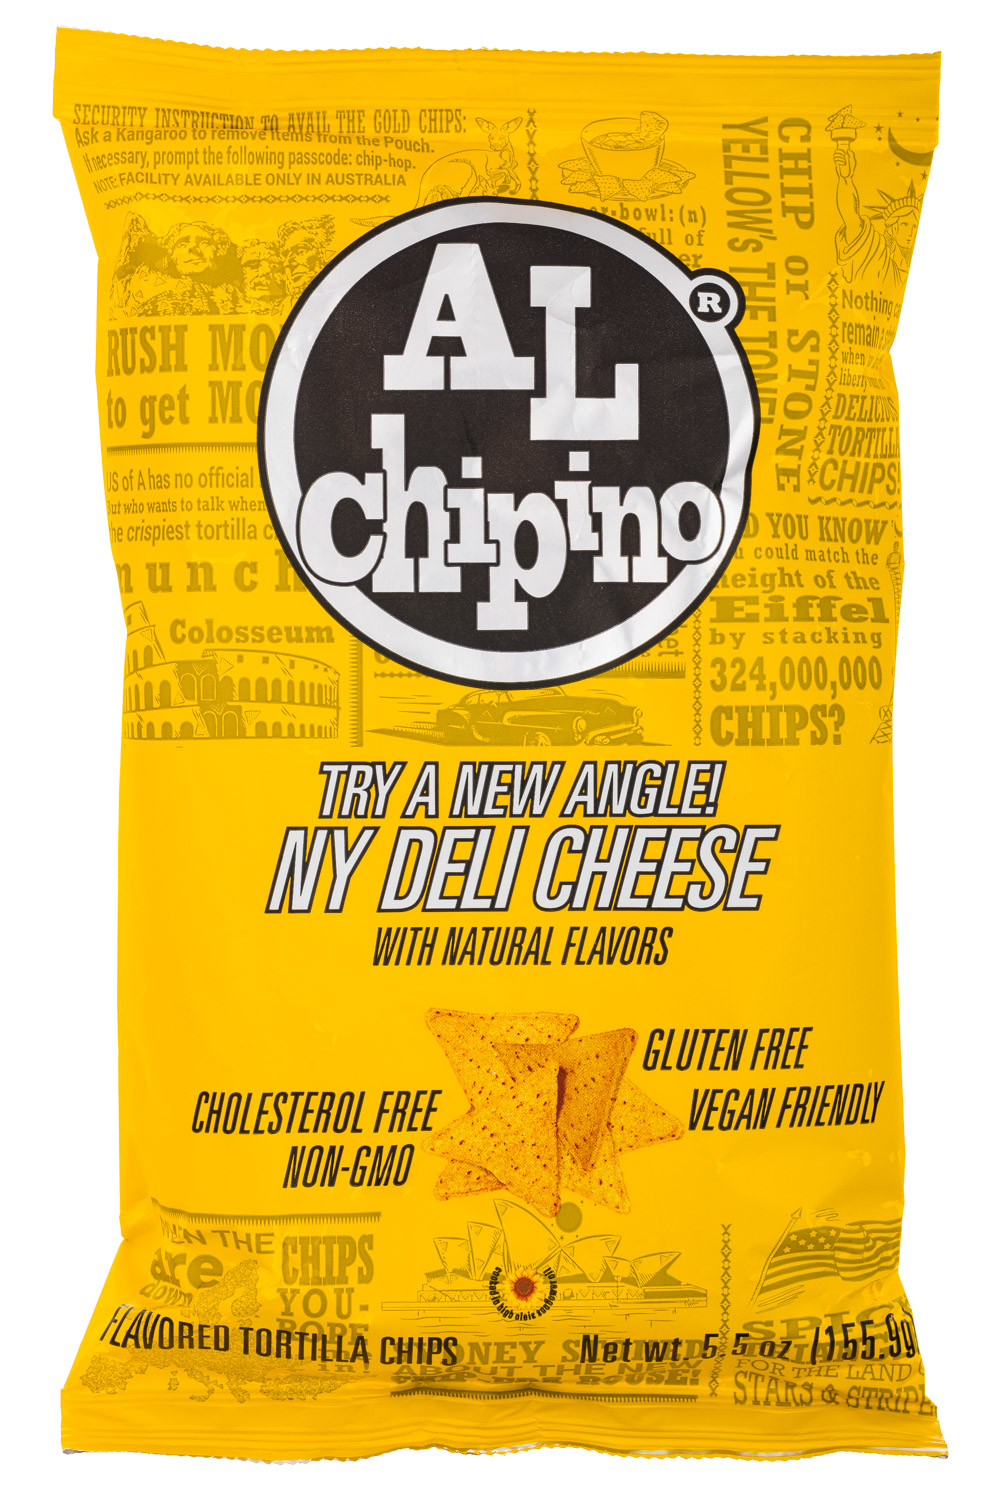 NY Deli Cheese